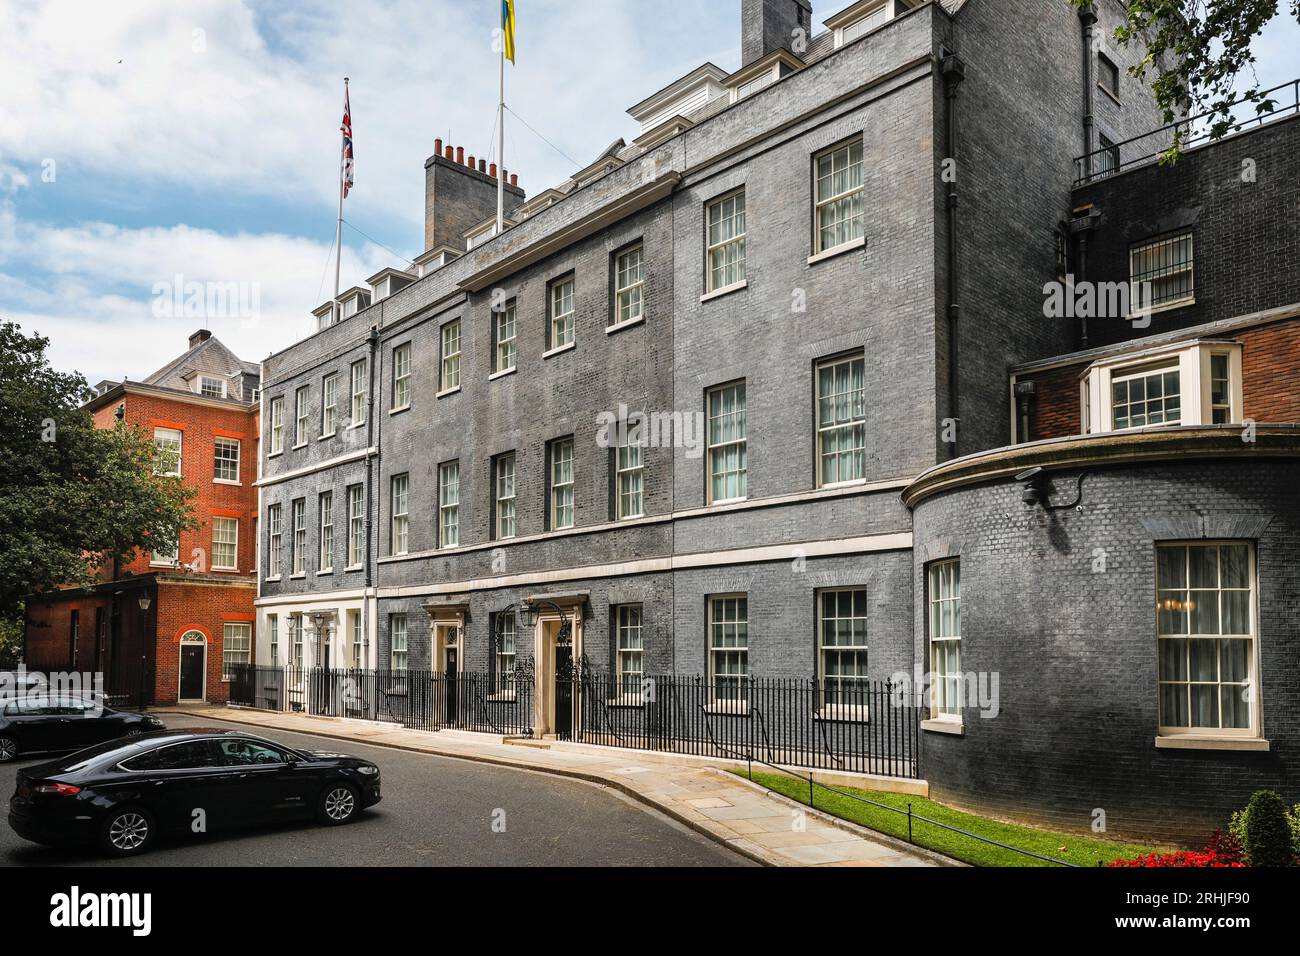 10 Downing Street, iconica architettura esterna degli edifici residenziali del primo Ministro, vuota al sole, Westminster, Londra, Inghilterra, REGNO UNITO Foto Stock